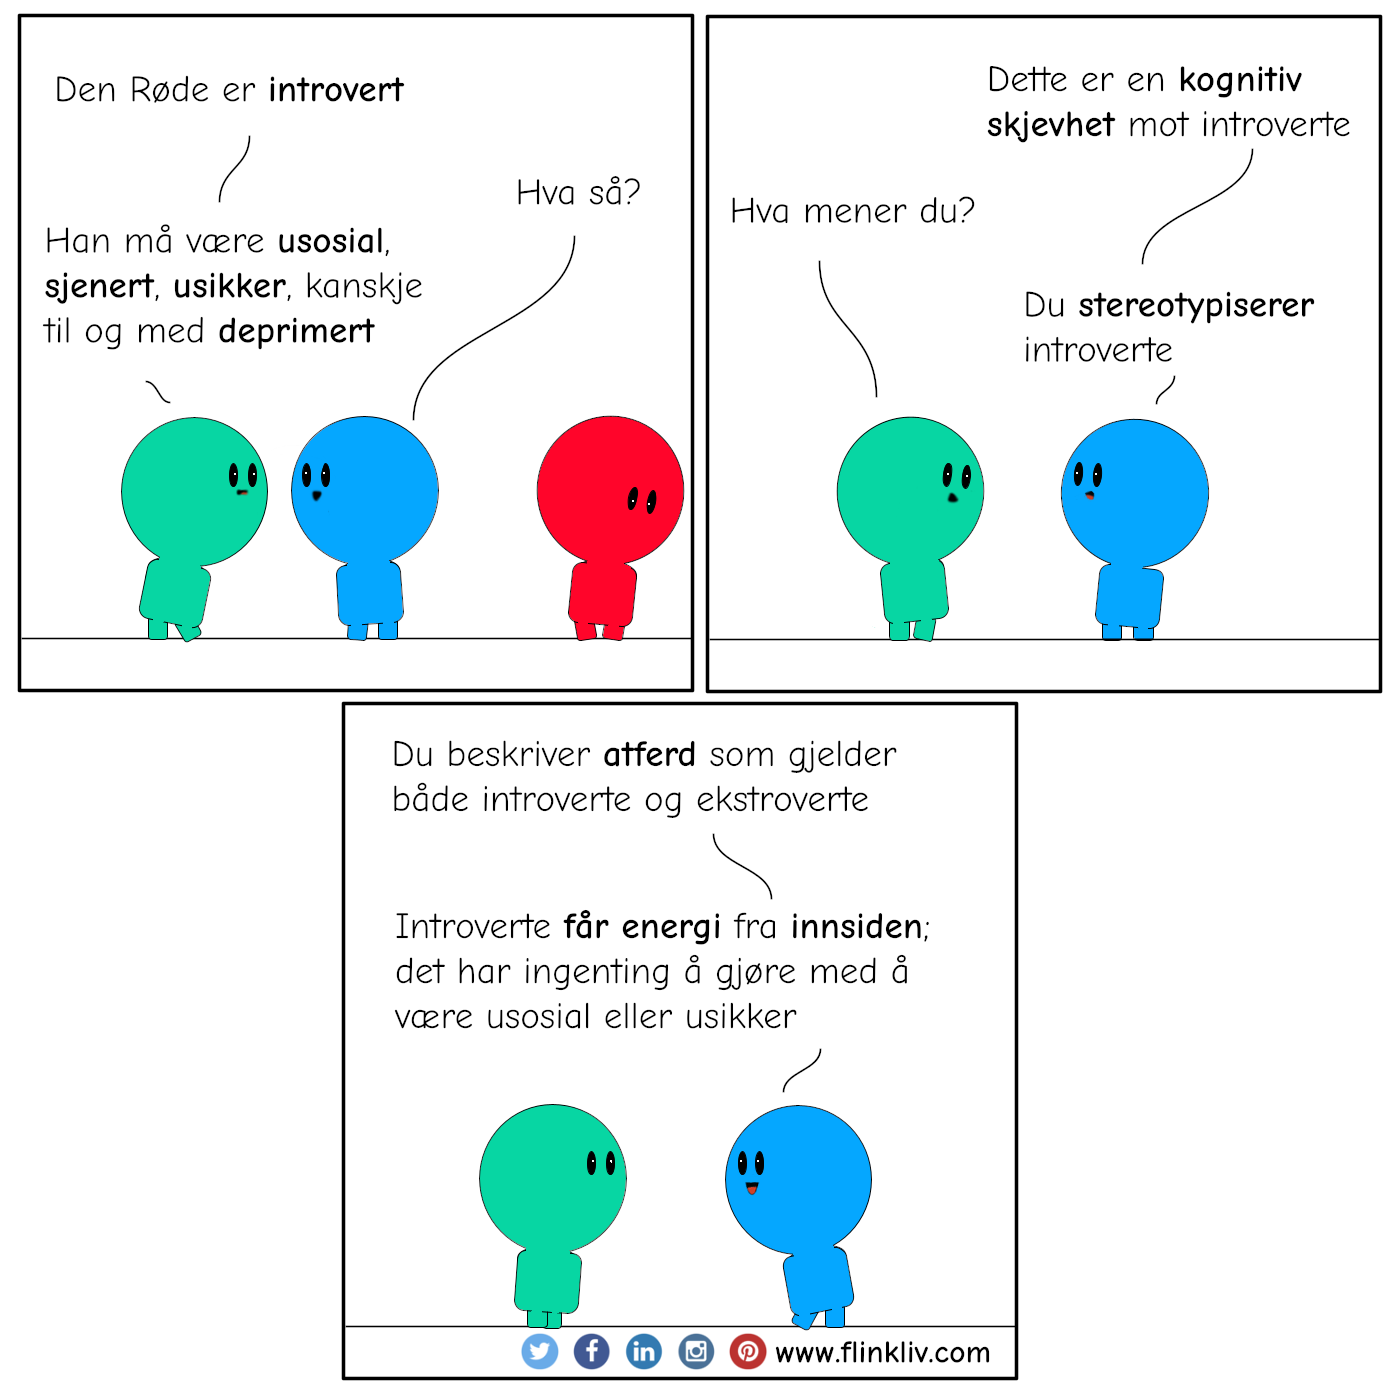 Samtale mellom A og B om kognitiv skjevhet mot introverte.
              A: Den røde er introvert
              B: Hva så?
              A: Han må være usosial, sjenert, usikker, kanskje til og med deprimert
              B: Dette er en kognitiv skjevhet mot introverte
              A: Hva mener du?
              B: Du stereotypiserer introverte
              B: Du beskriver atferd som gjelder både introverte og ekstroverte
              B: Introverte får energi fra innsiden; det har ingenting å gjøre med å være usosial eller usikker.
			By flinkliv.com
              